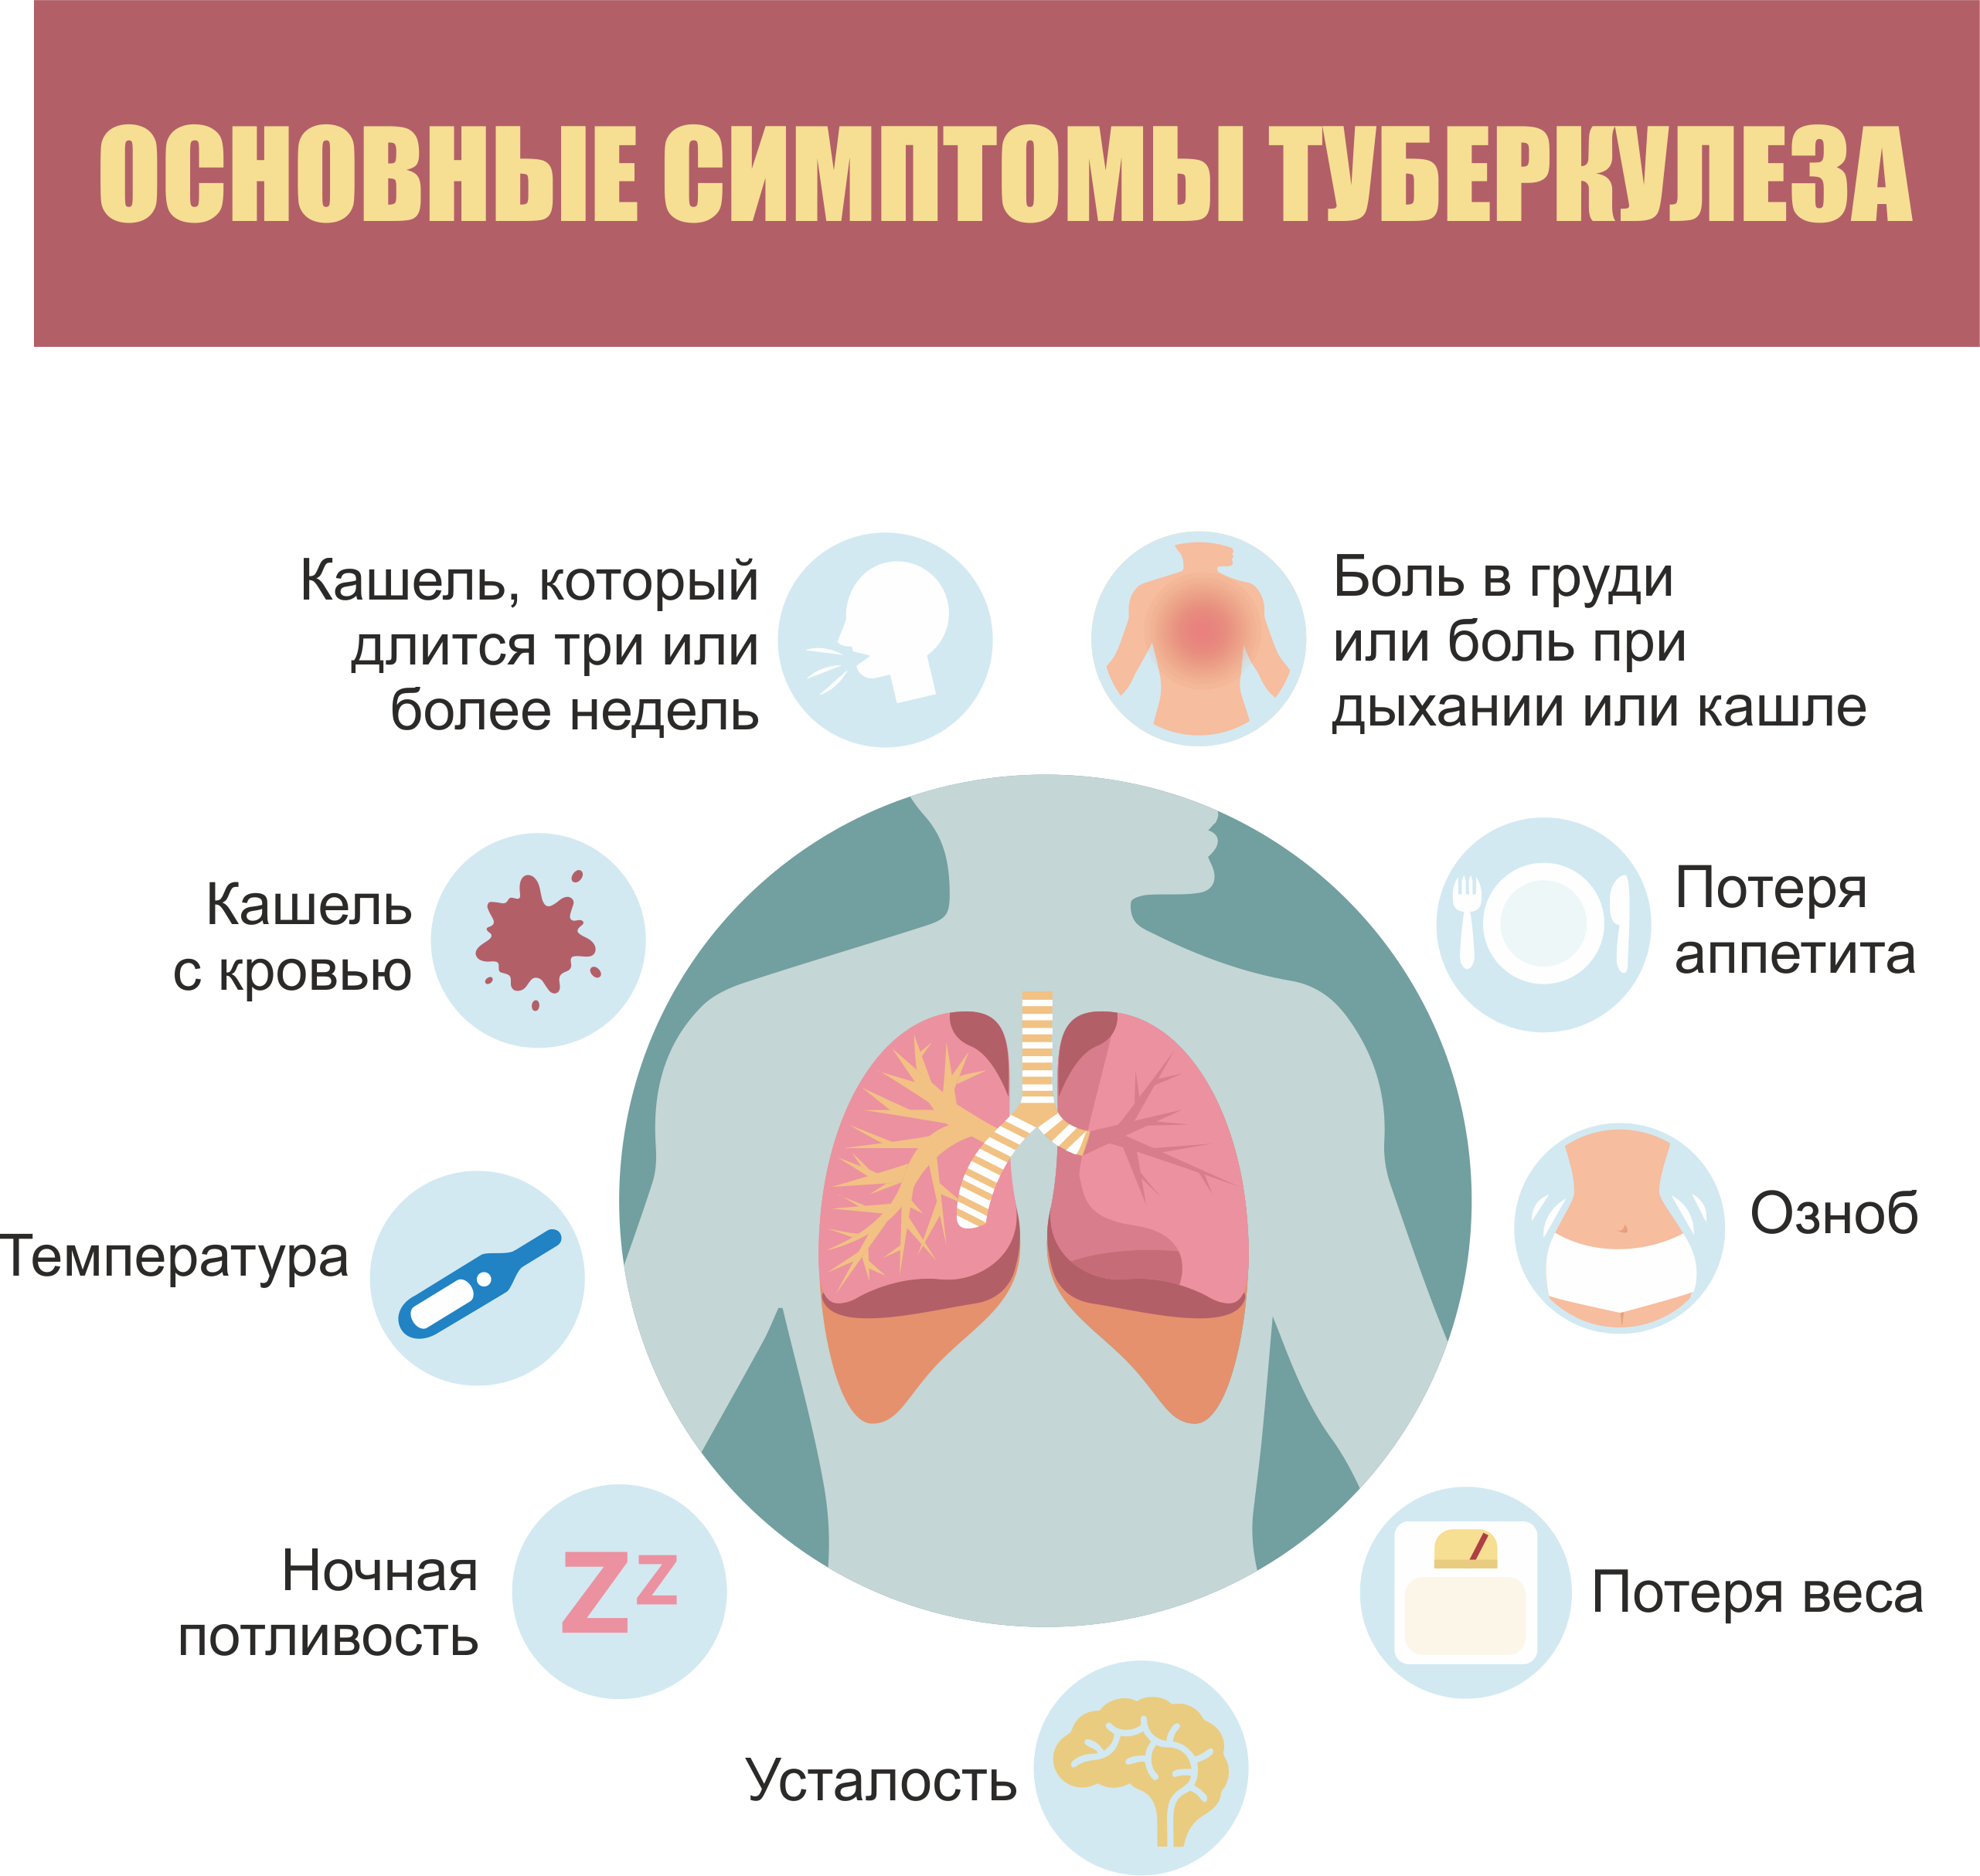 Основные симптомы туберкулеза